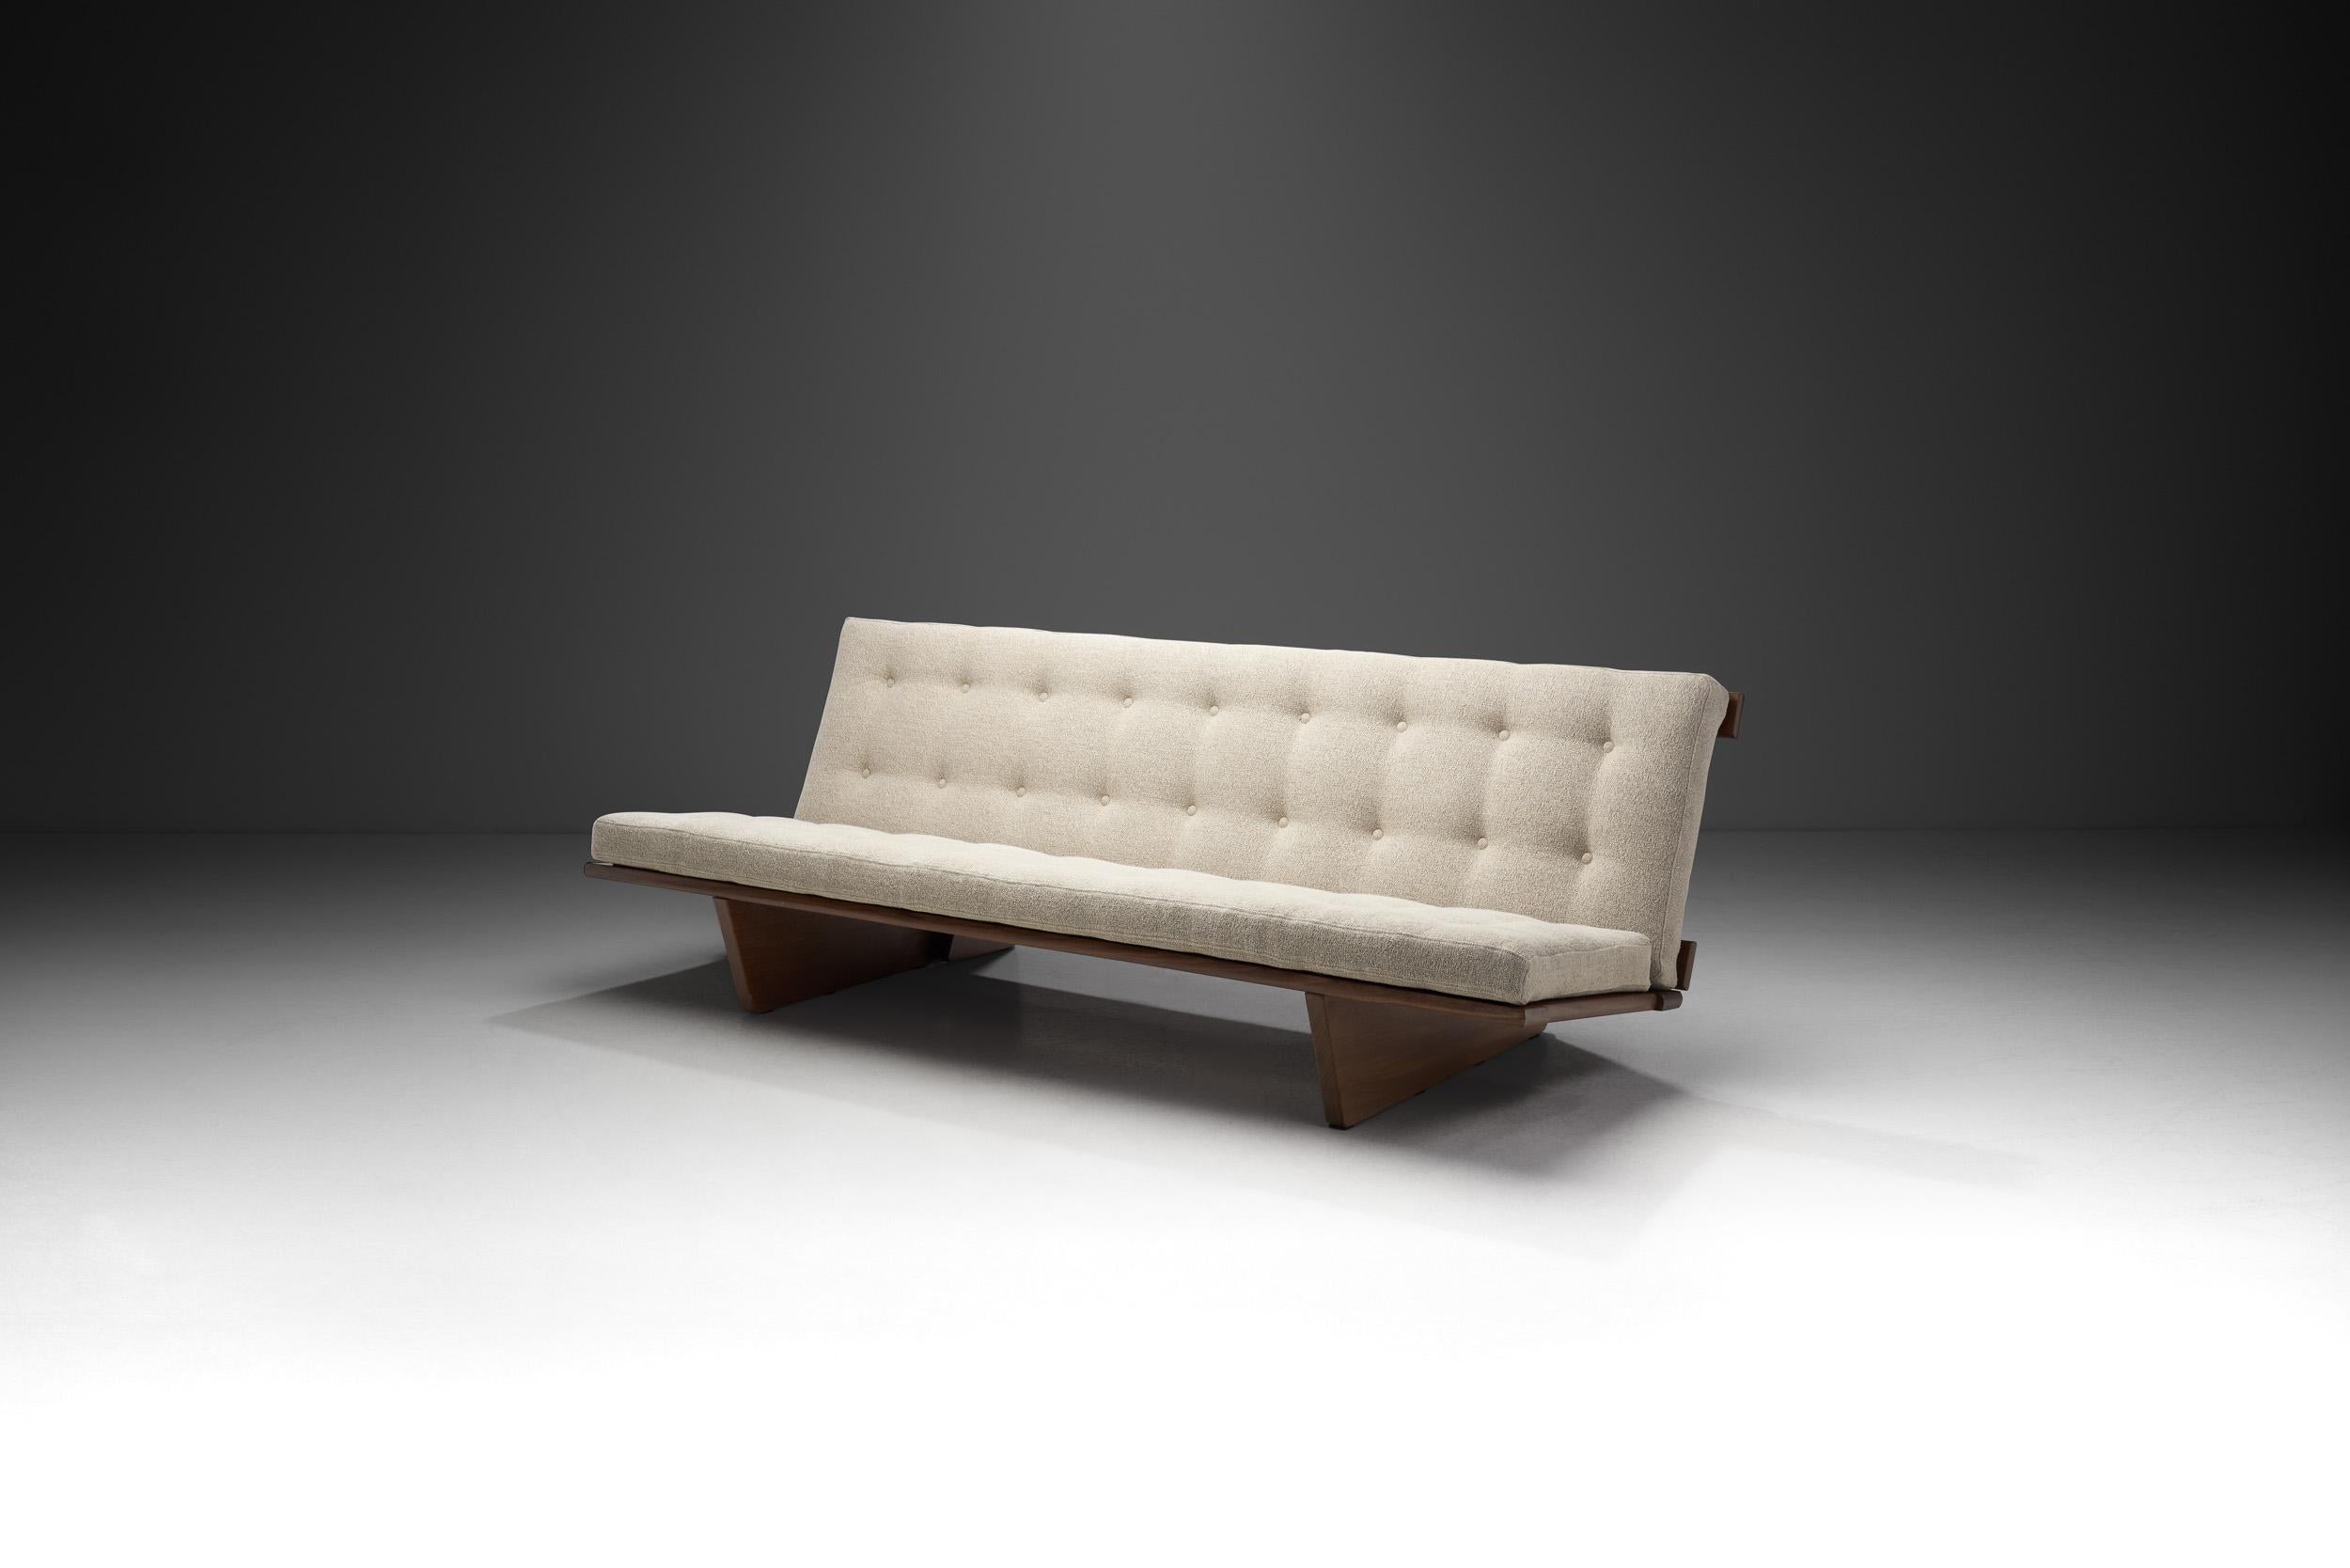 Ce rare canapé et lit de jour a été réalisé par le designer danois Harbo Sølvsten et constitue une pièce exquise de l'histoire du design moderne danois. Si les pièces de l'époque du Midcentury se caractérisent généralement par la clarté de leur